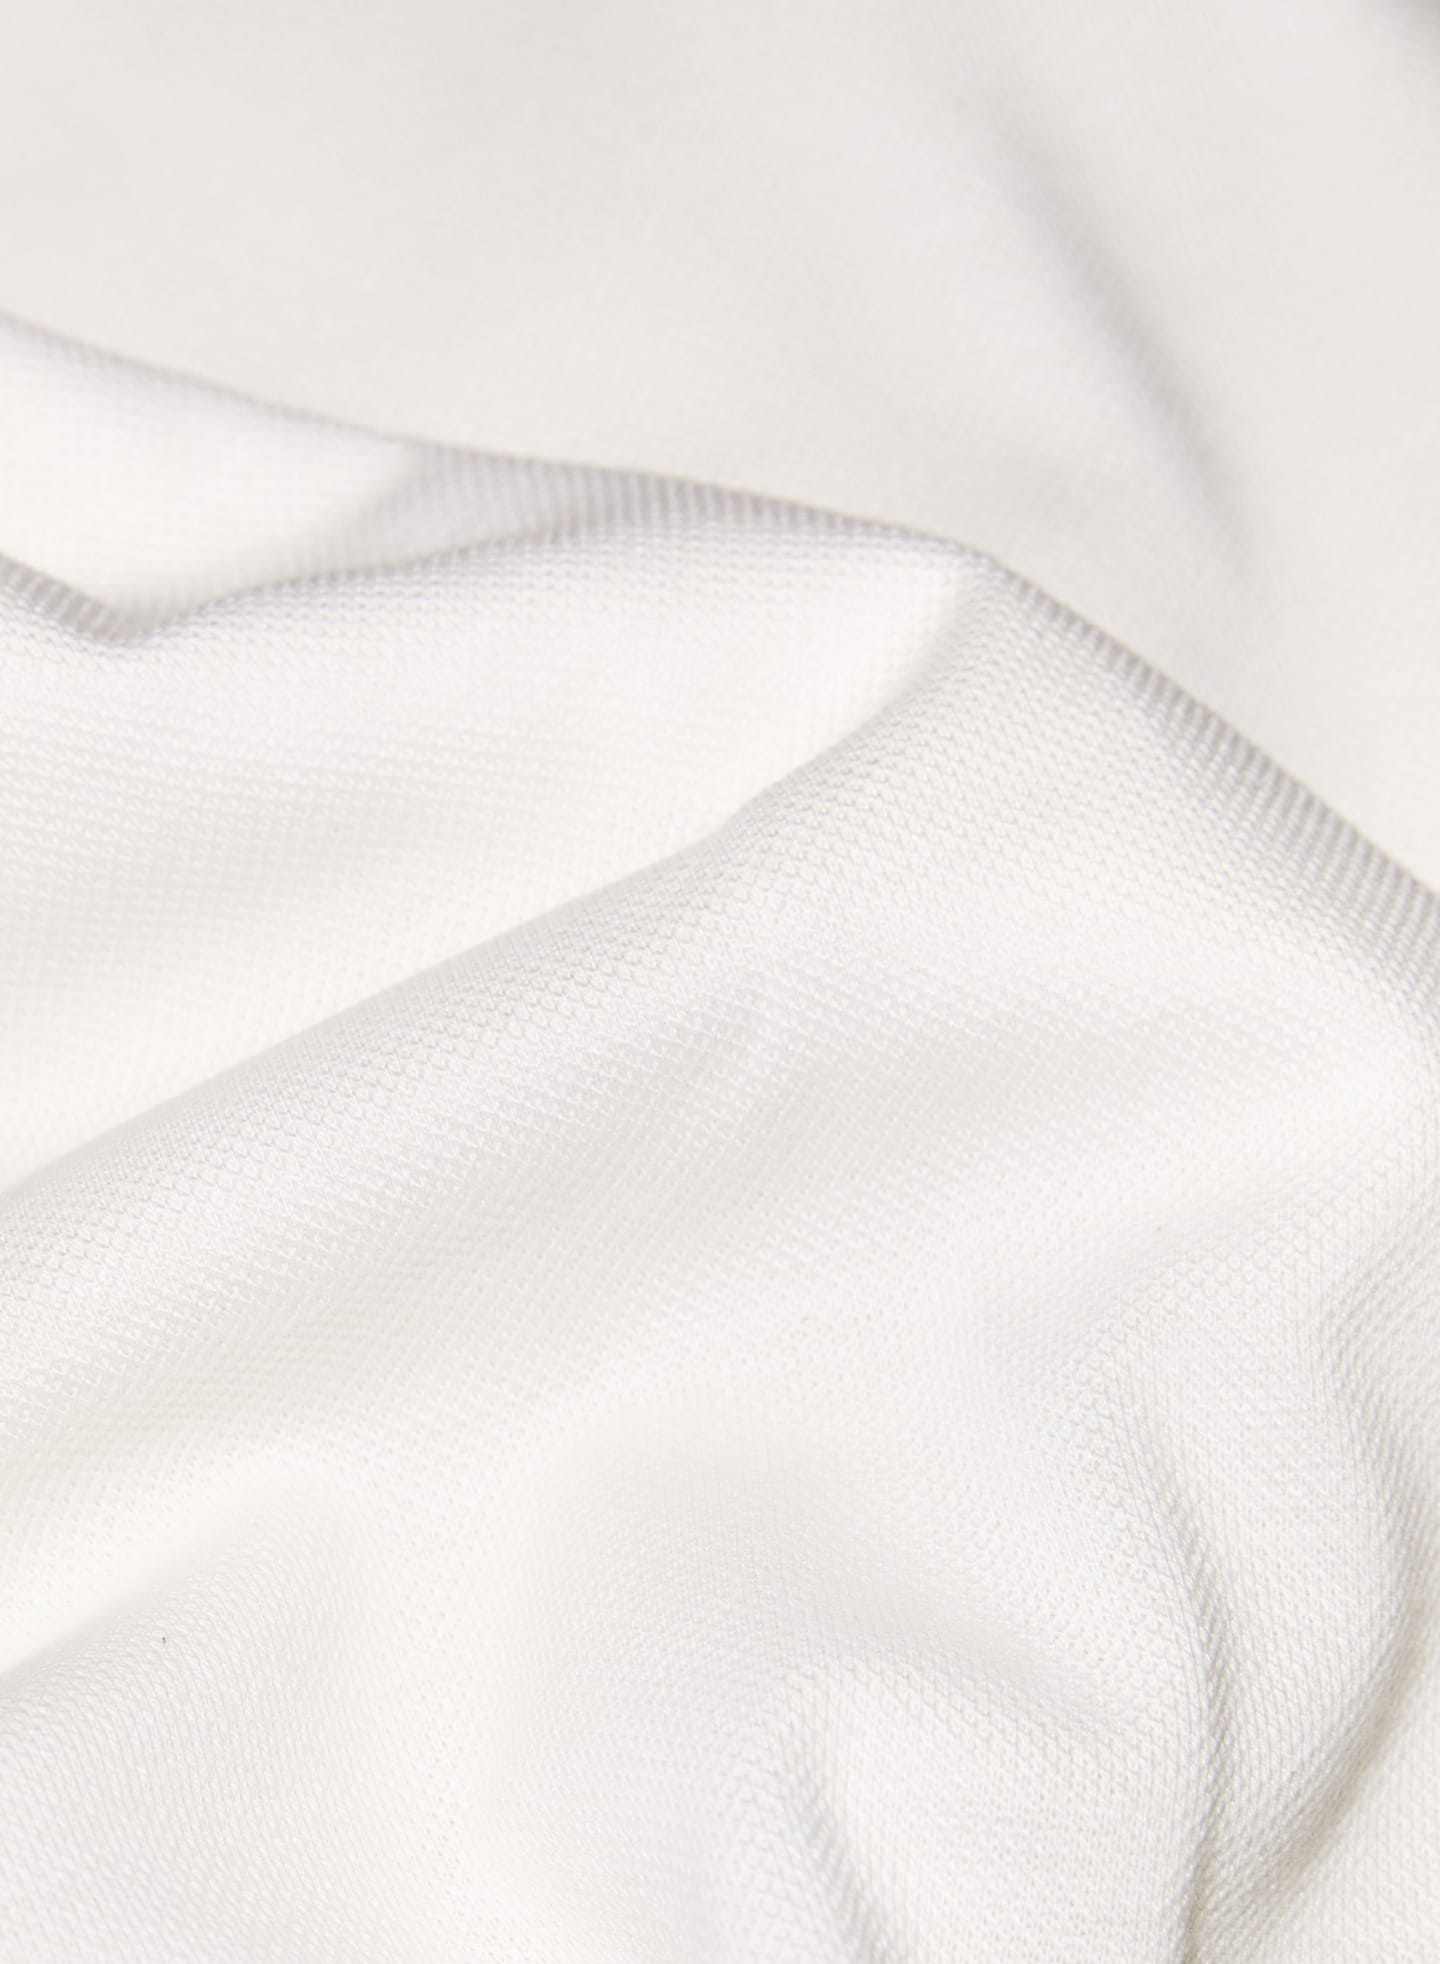 Weißer Piqué-Stoff, der von Suitsupply hauptsächlich für Poloshirts verwendet wird.